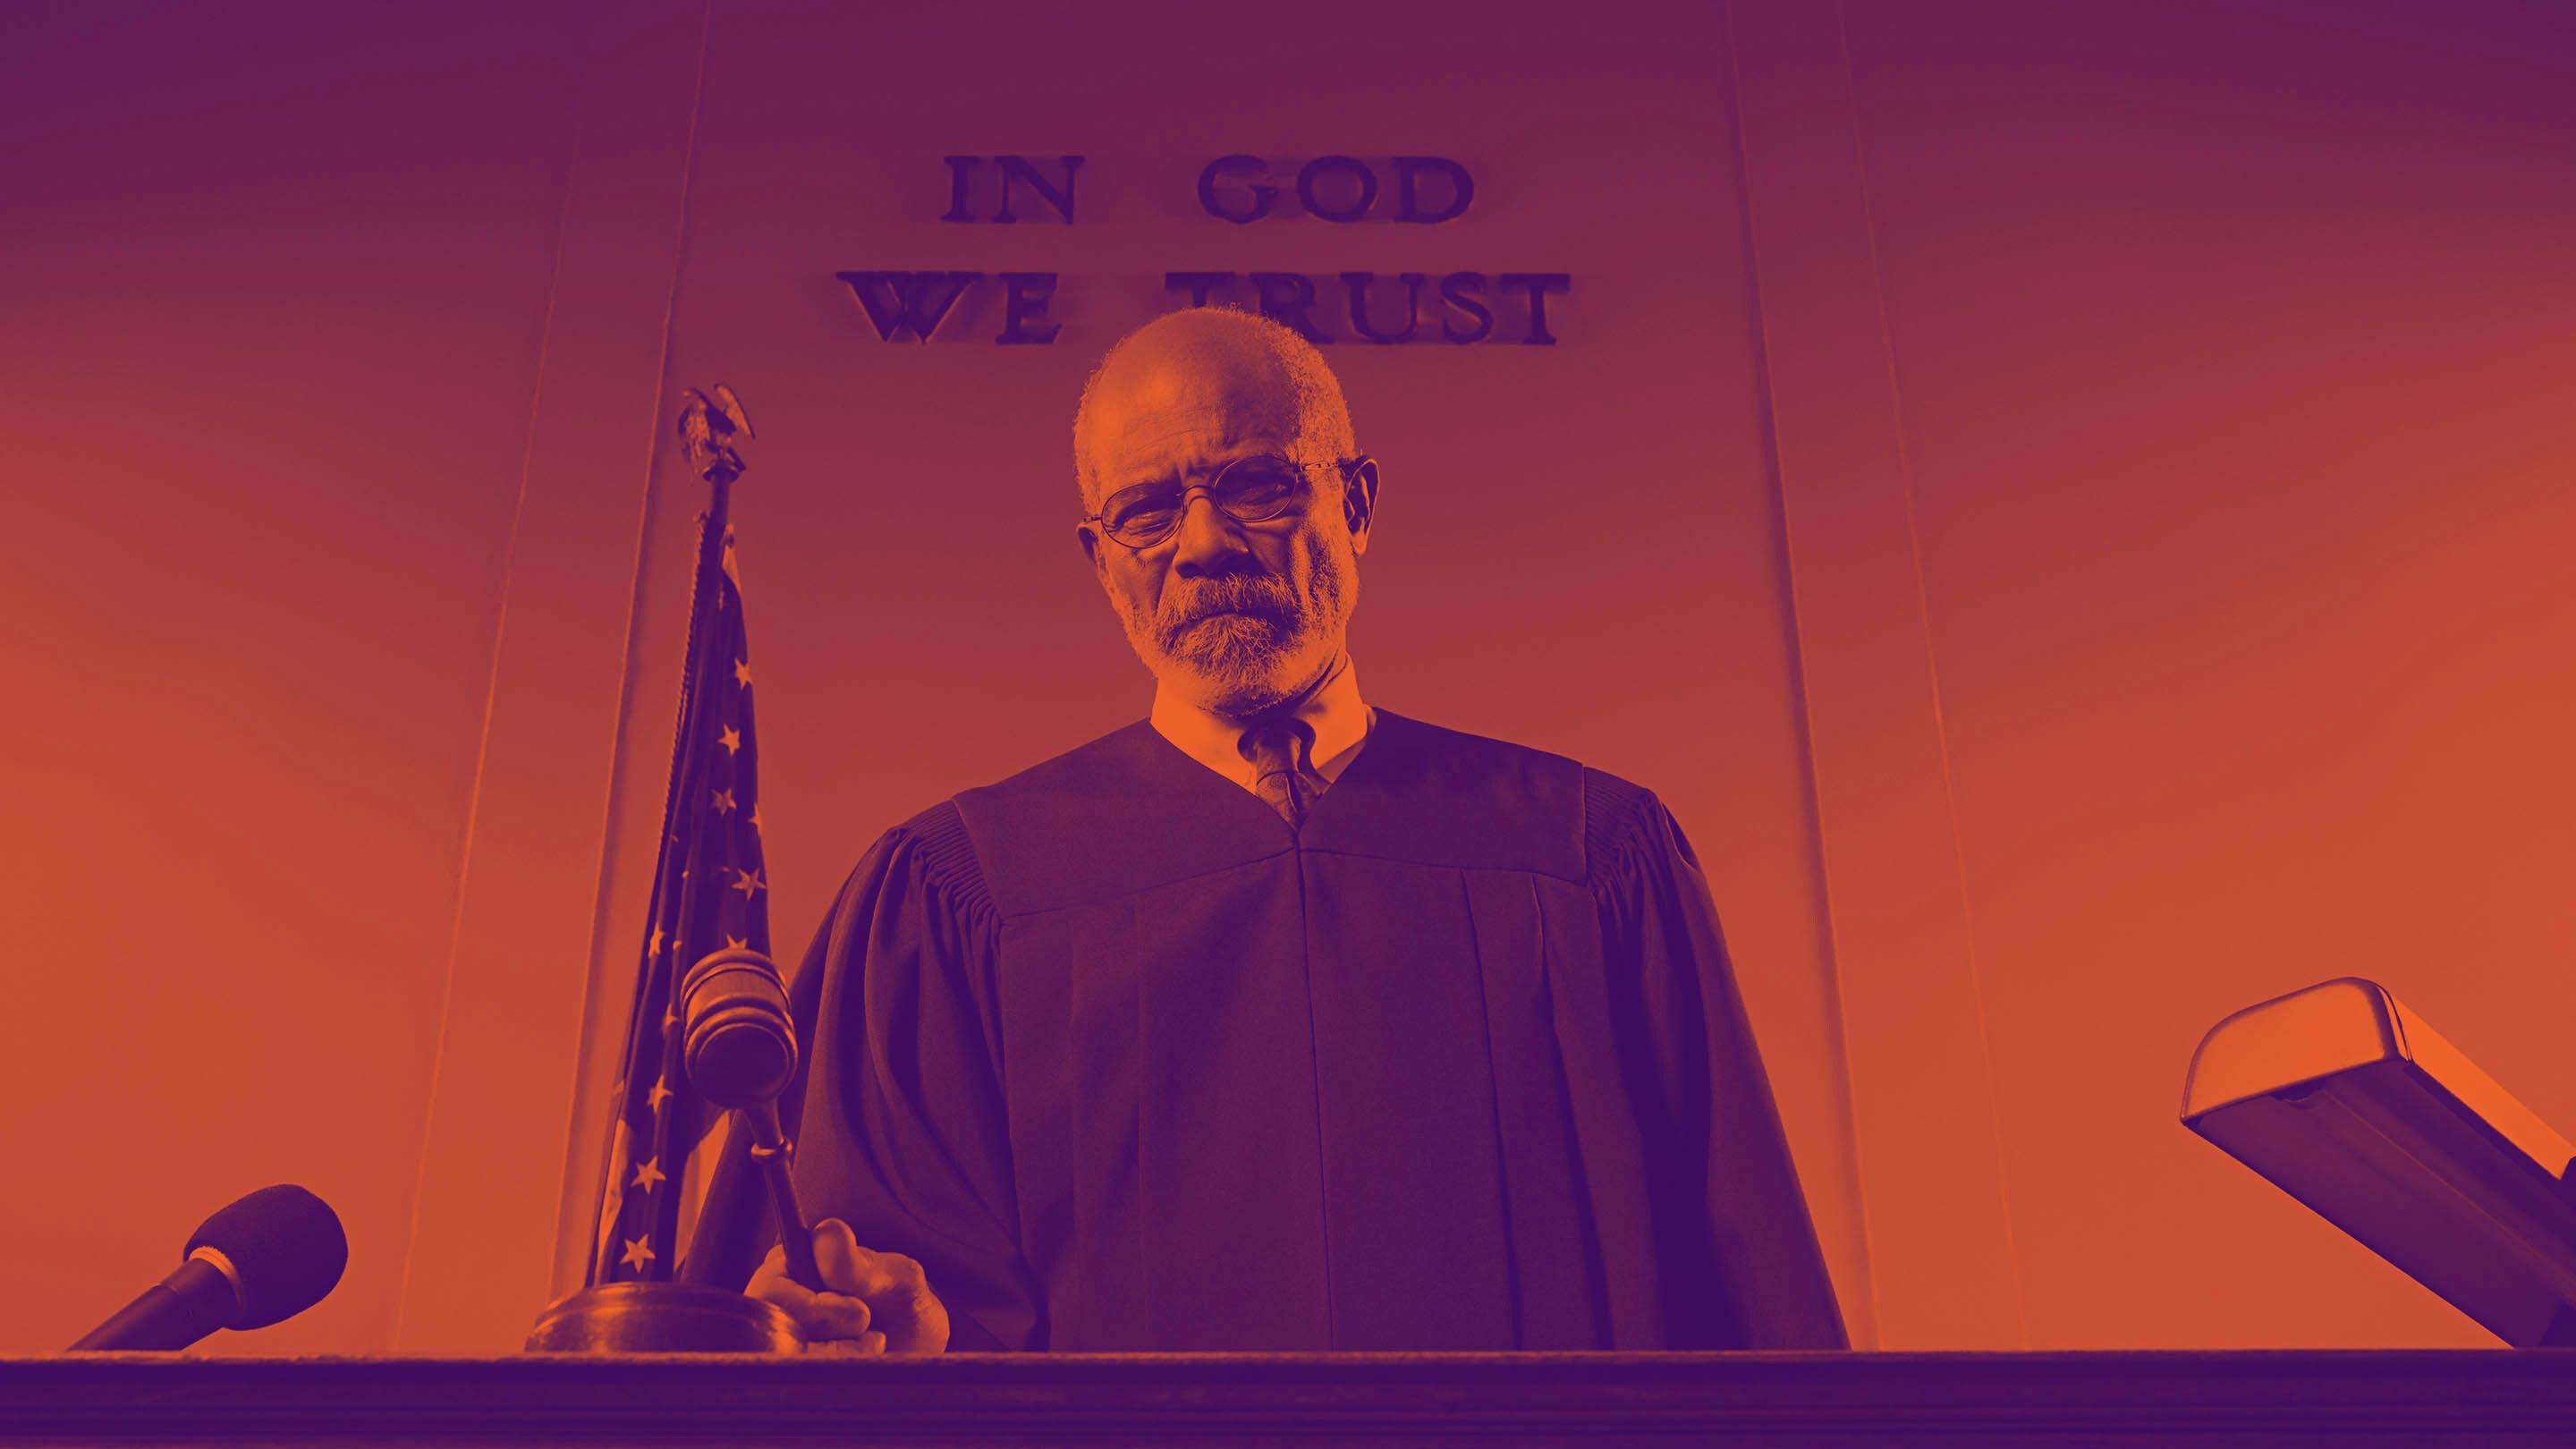 Stylized image of black judge at bench holding gavel.